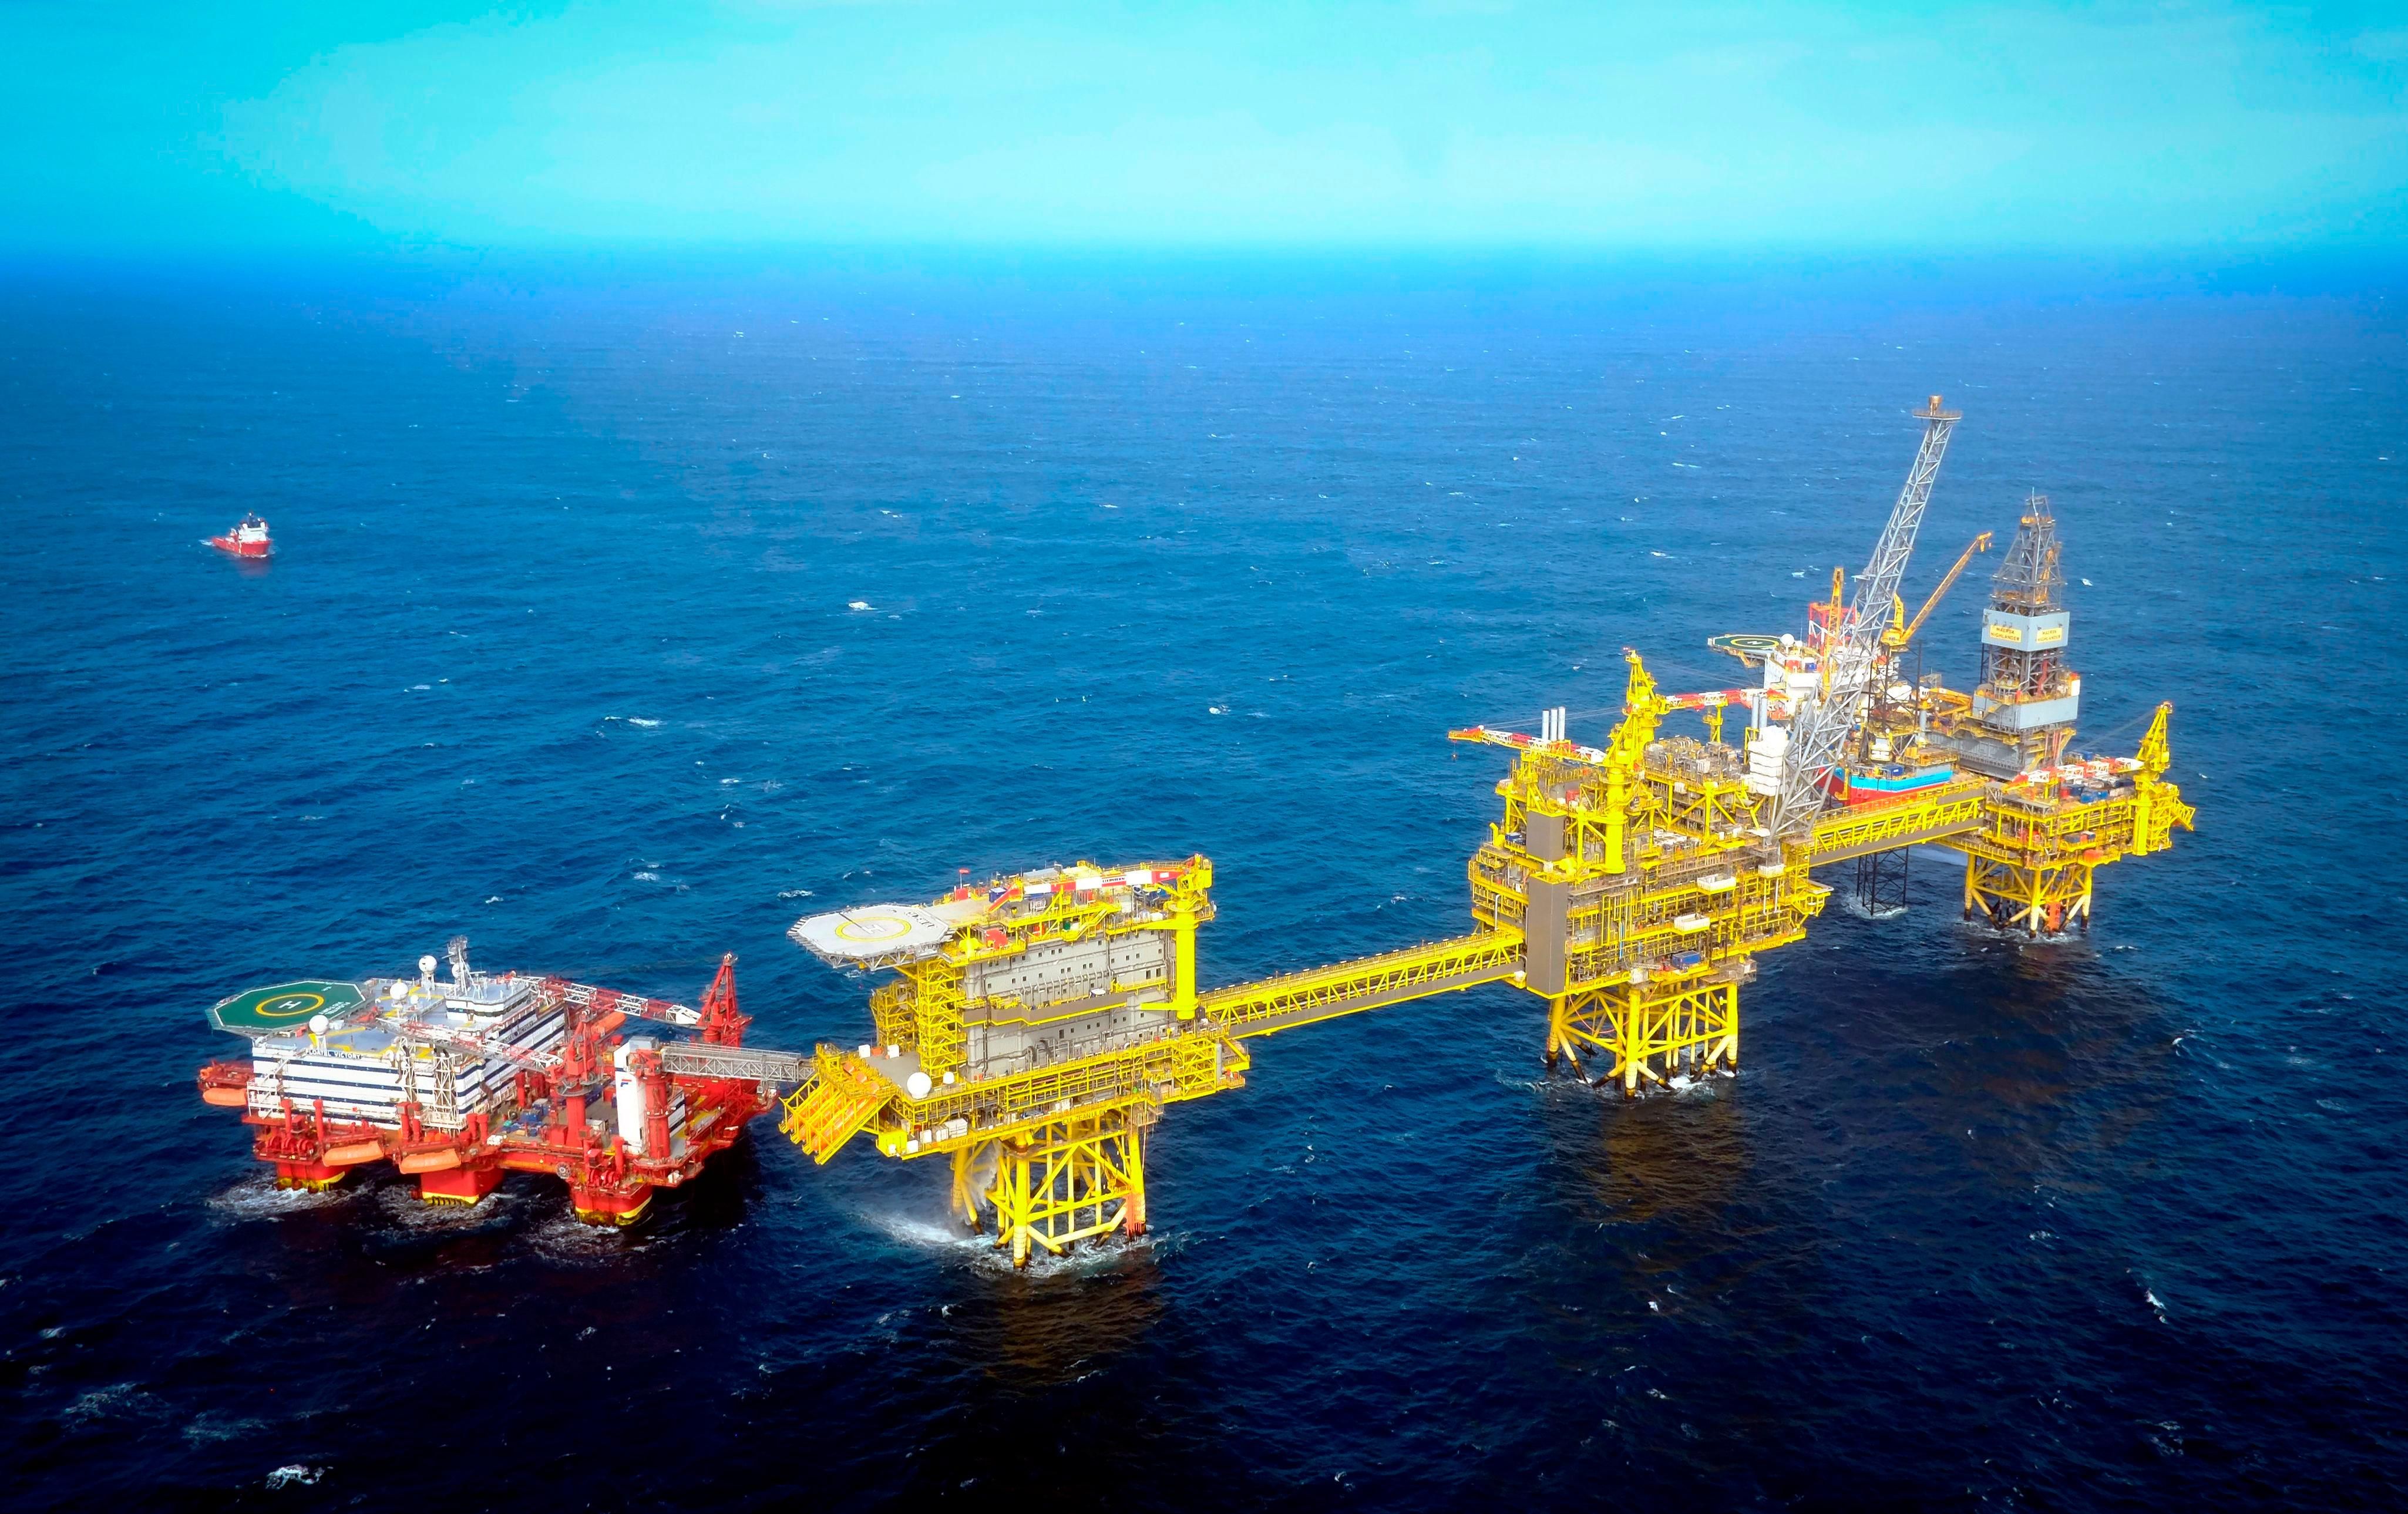 North Sea oil field